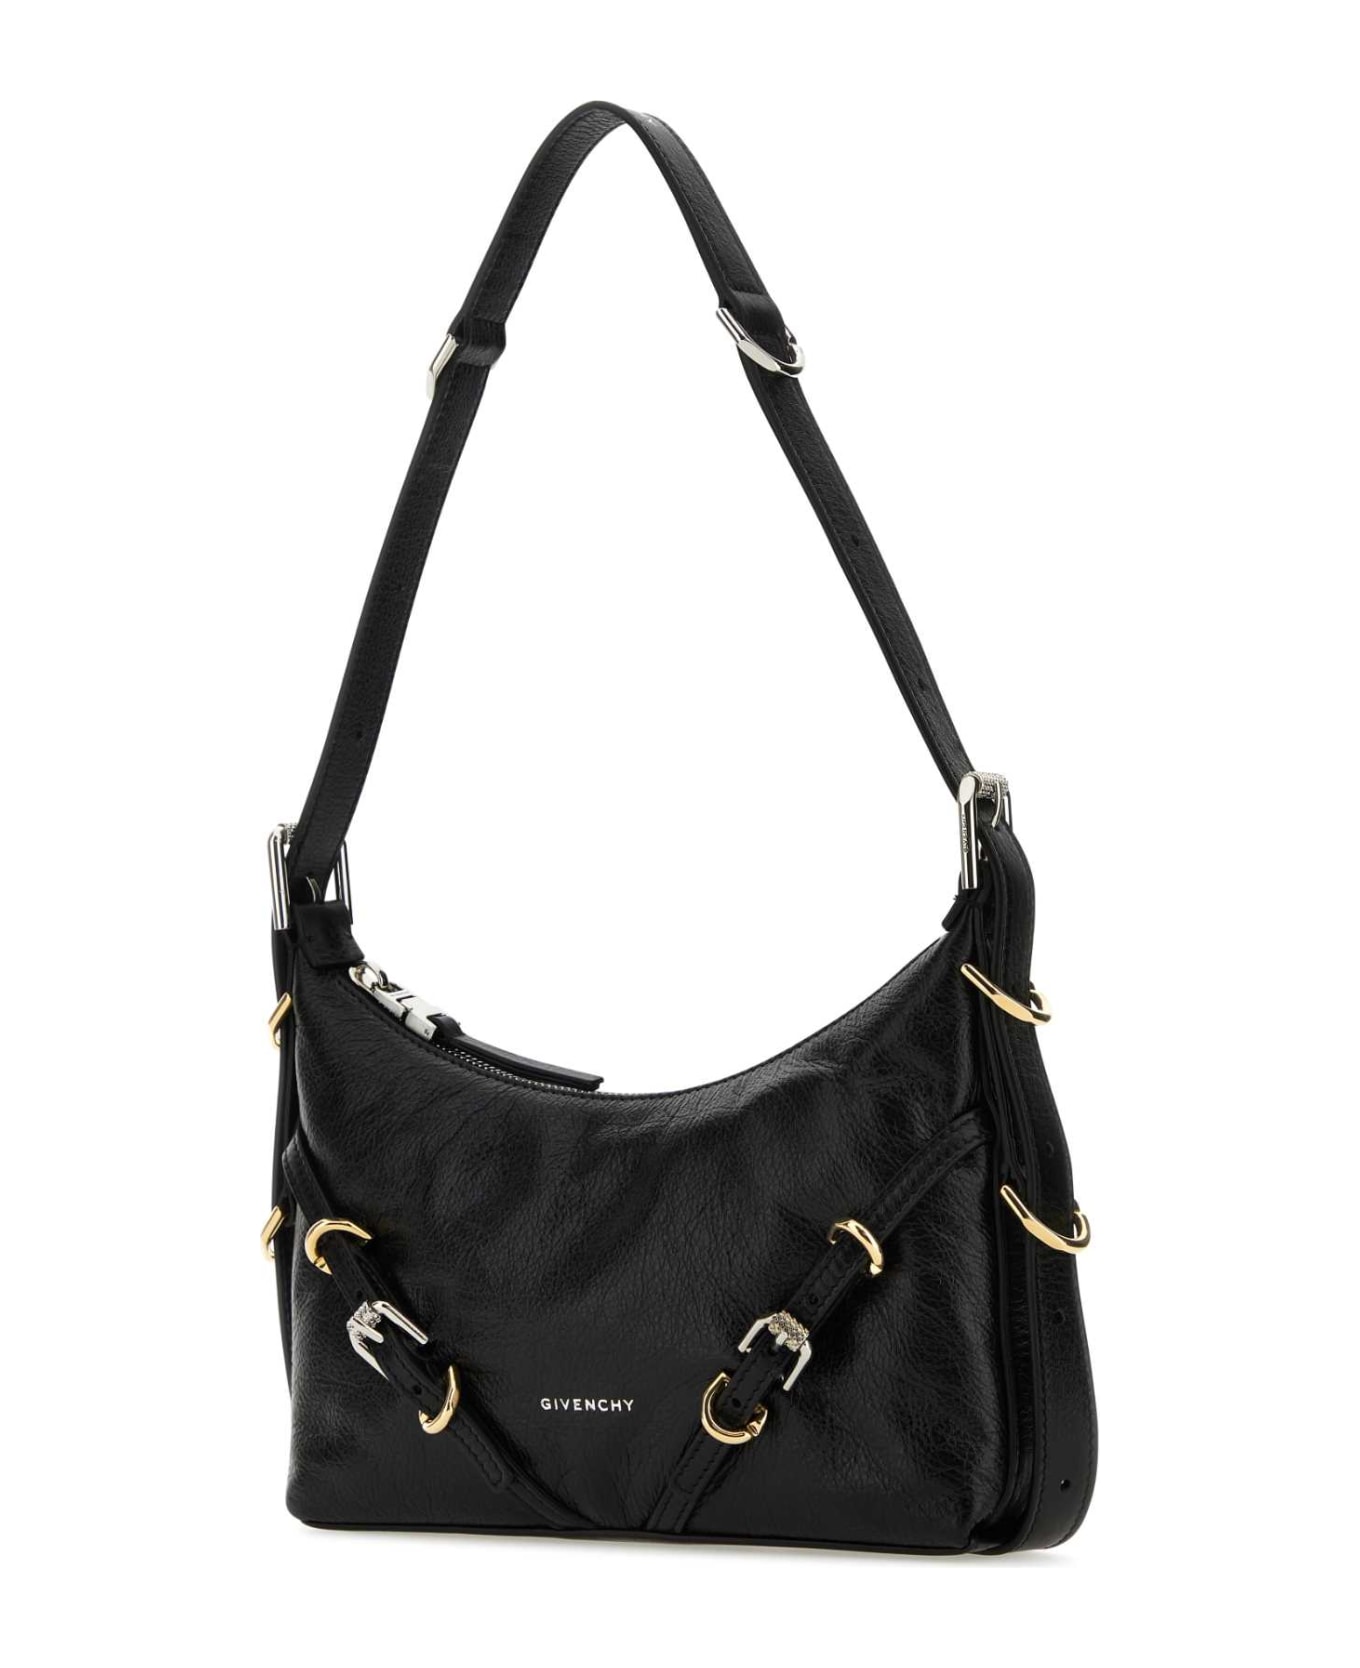 Givenchy Black Leather Mini Voyou Shoulder Bag - BLACK